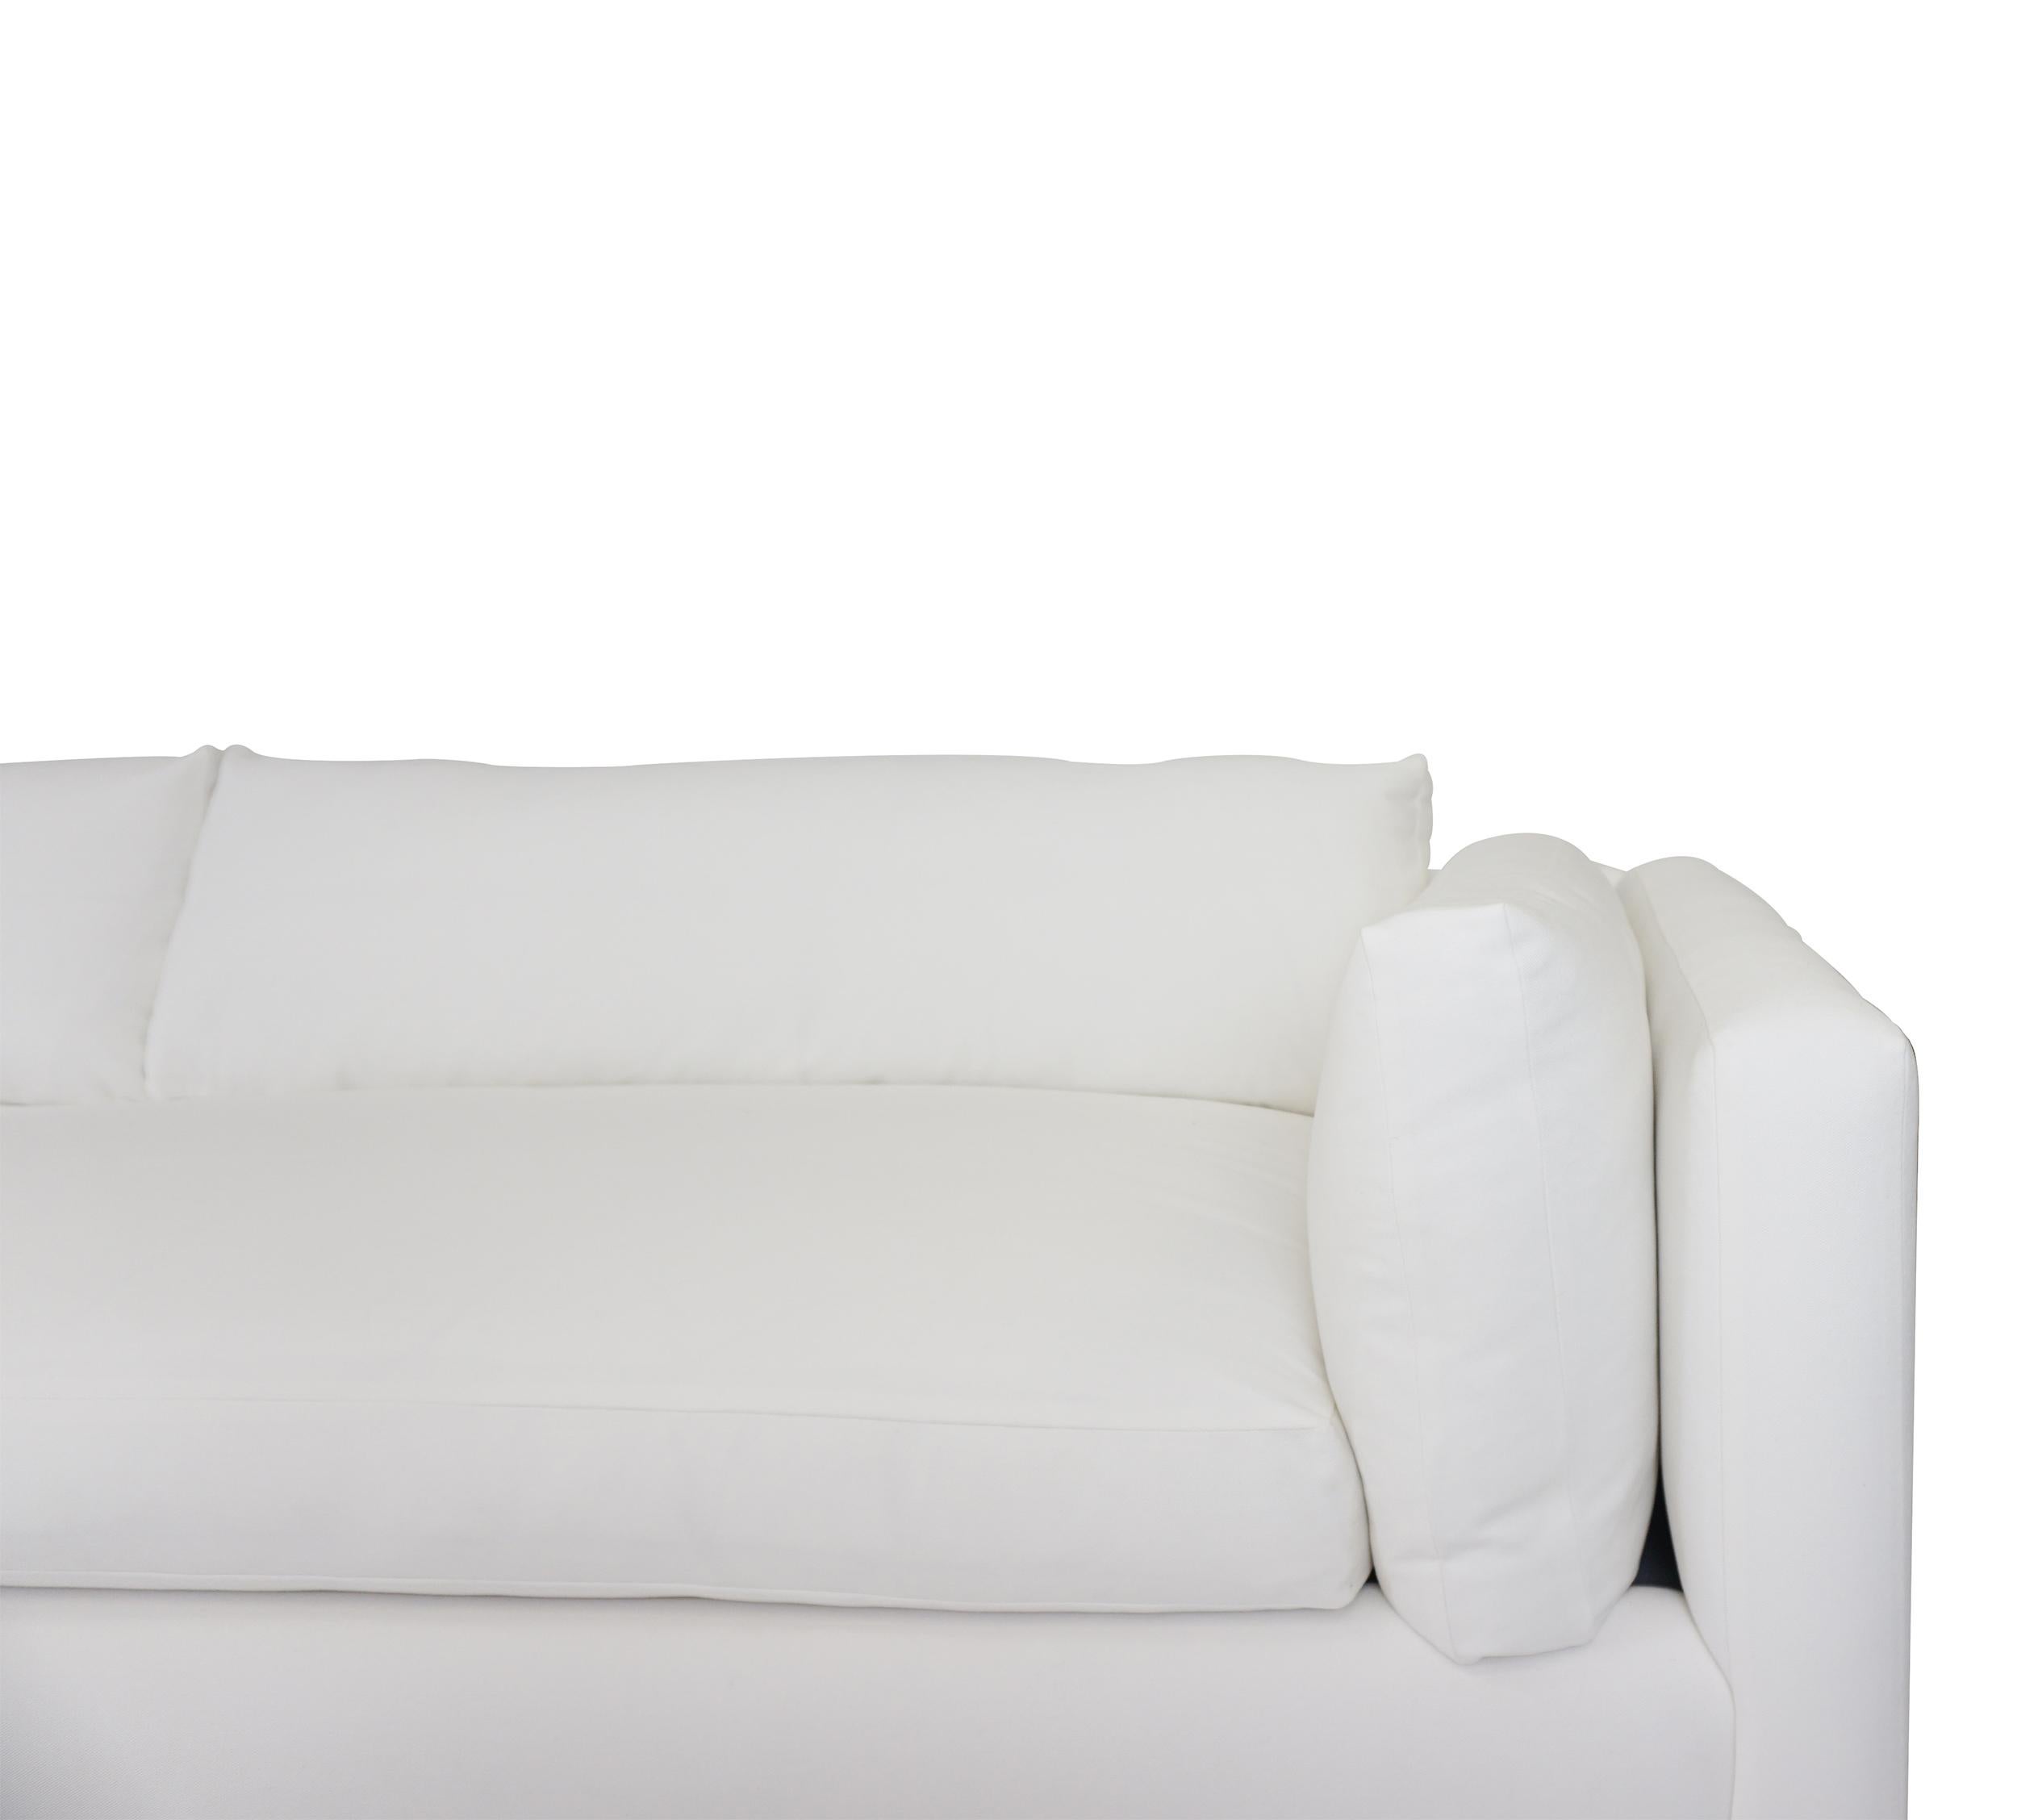 Sofa im Pariser Stil mit einem Sitzkissen und großen Seiten- und Rückenkissen, alle mit Daunen/Federn gepolstert. Abgebildet in weißem Denim mit schwarz lackierten Beinen. Stoff und Beinausführung können individuell angepasst werden.